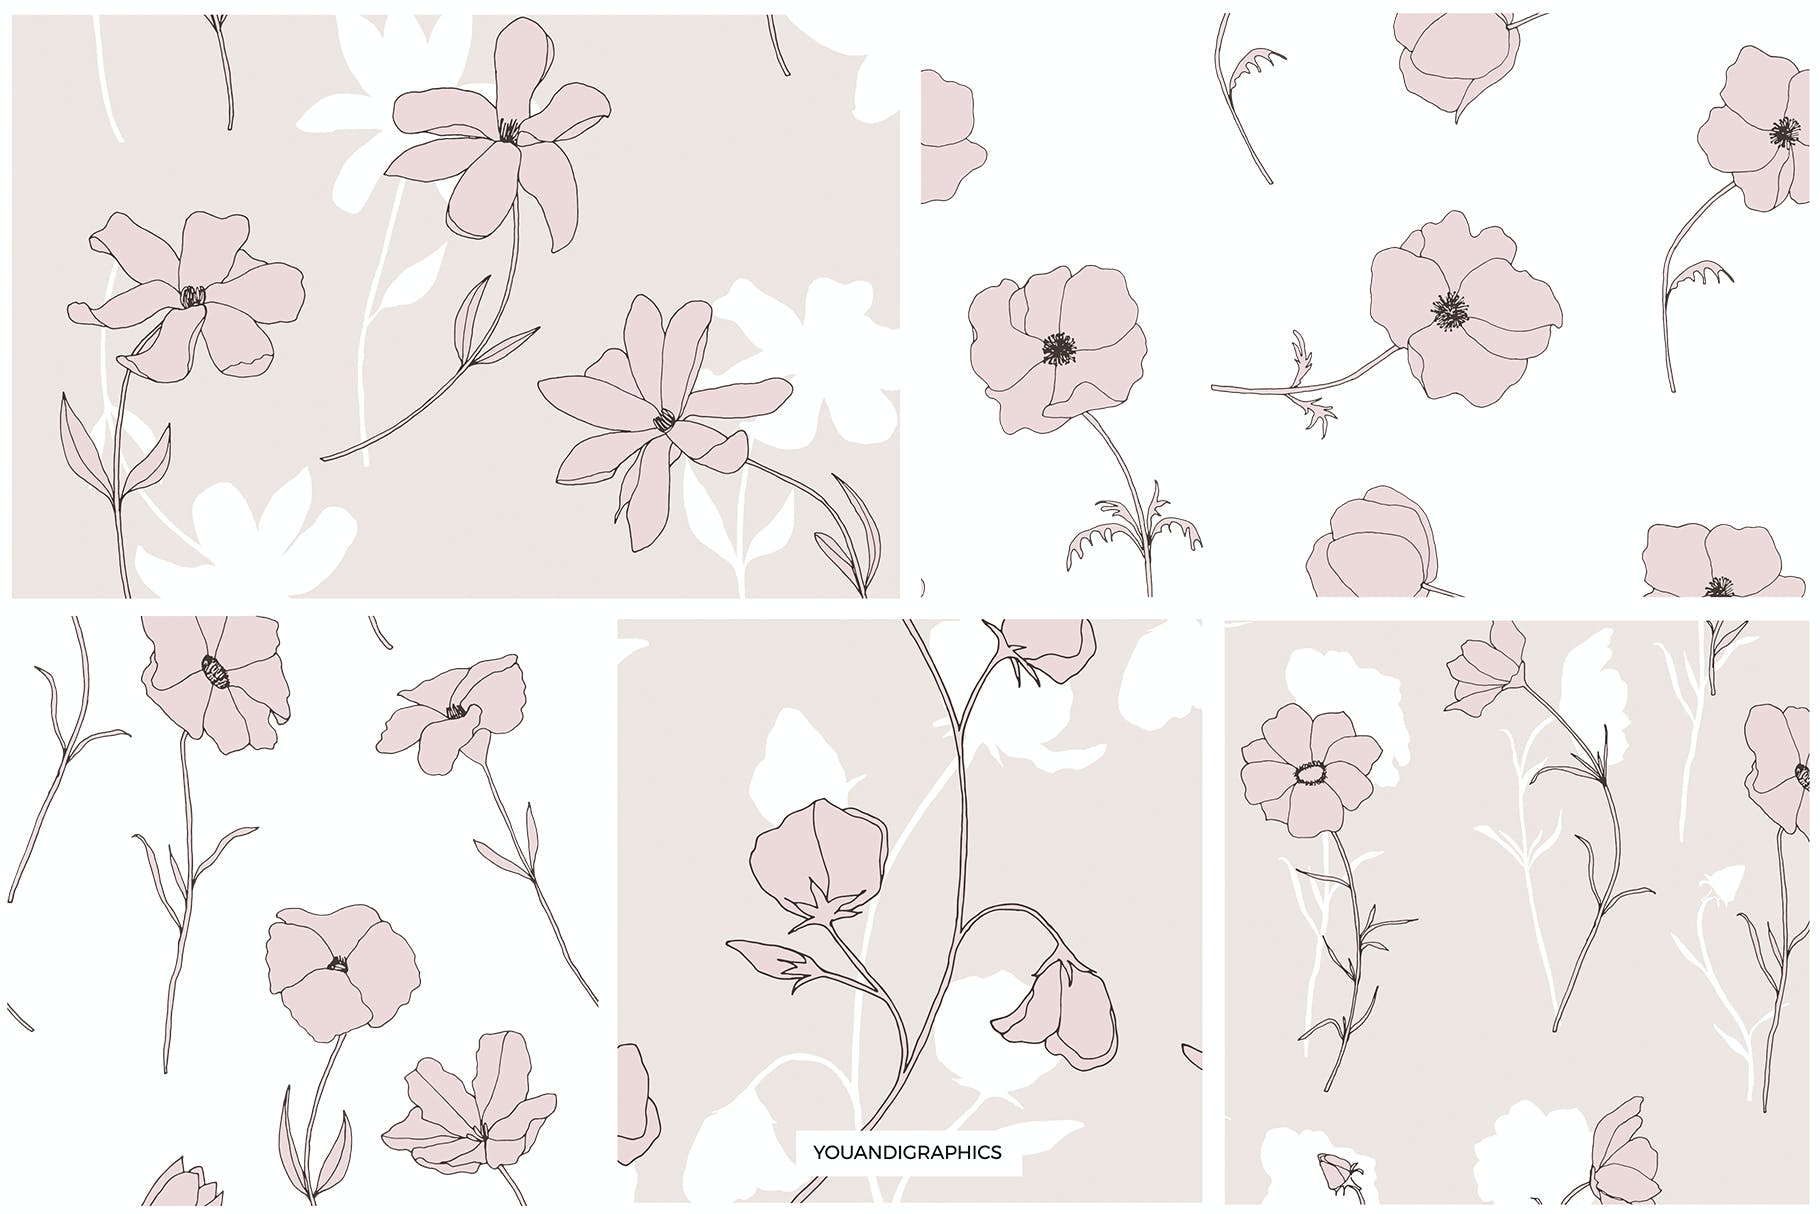 精美的花卉图案和元素 Dainty Floral Patterns & Elements 图片素材 第10张